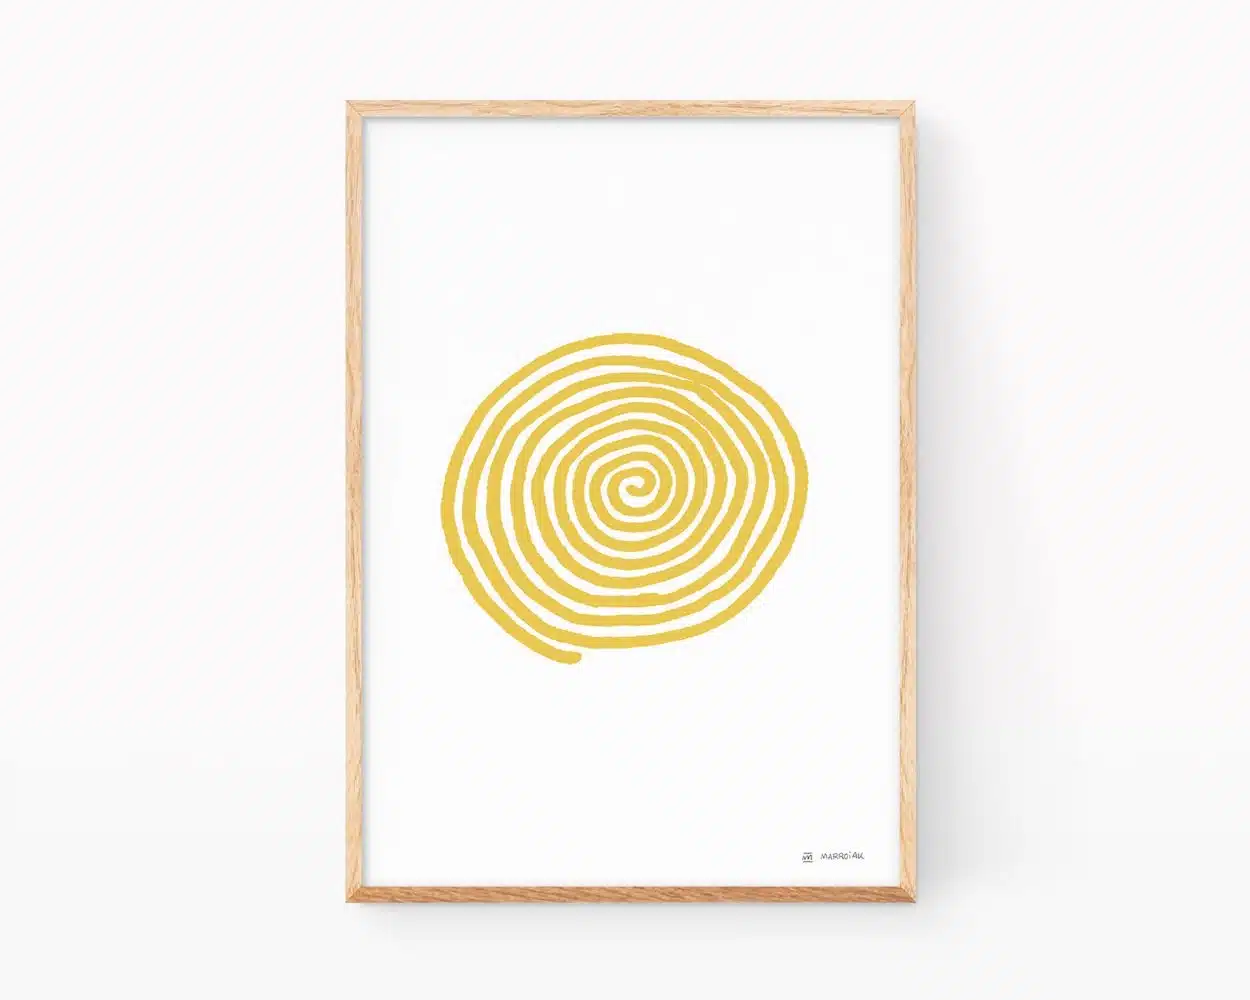 Cuadro para enmarcar con una ilustración de una espiral de color mostaza sobre blanco. Dibujos minimalistas para decorar.